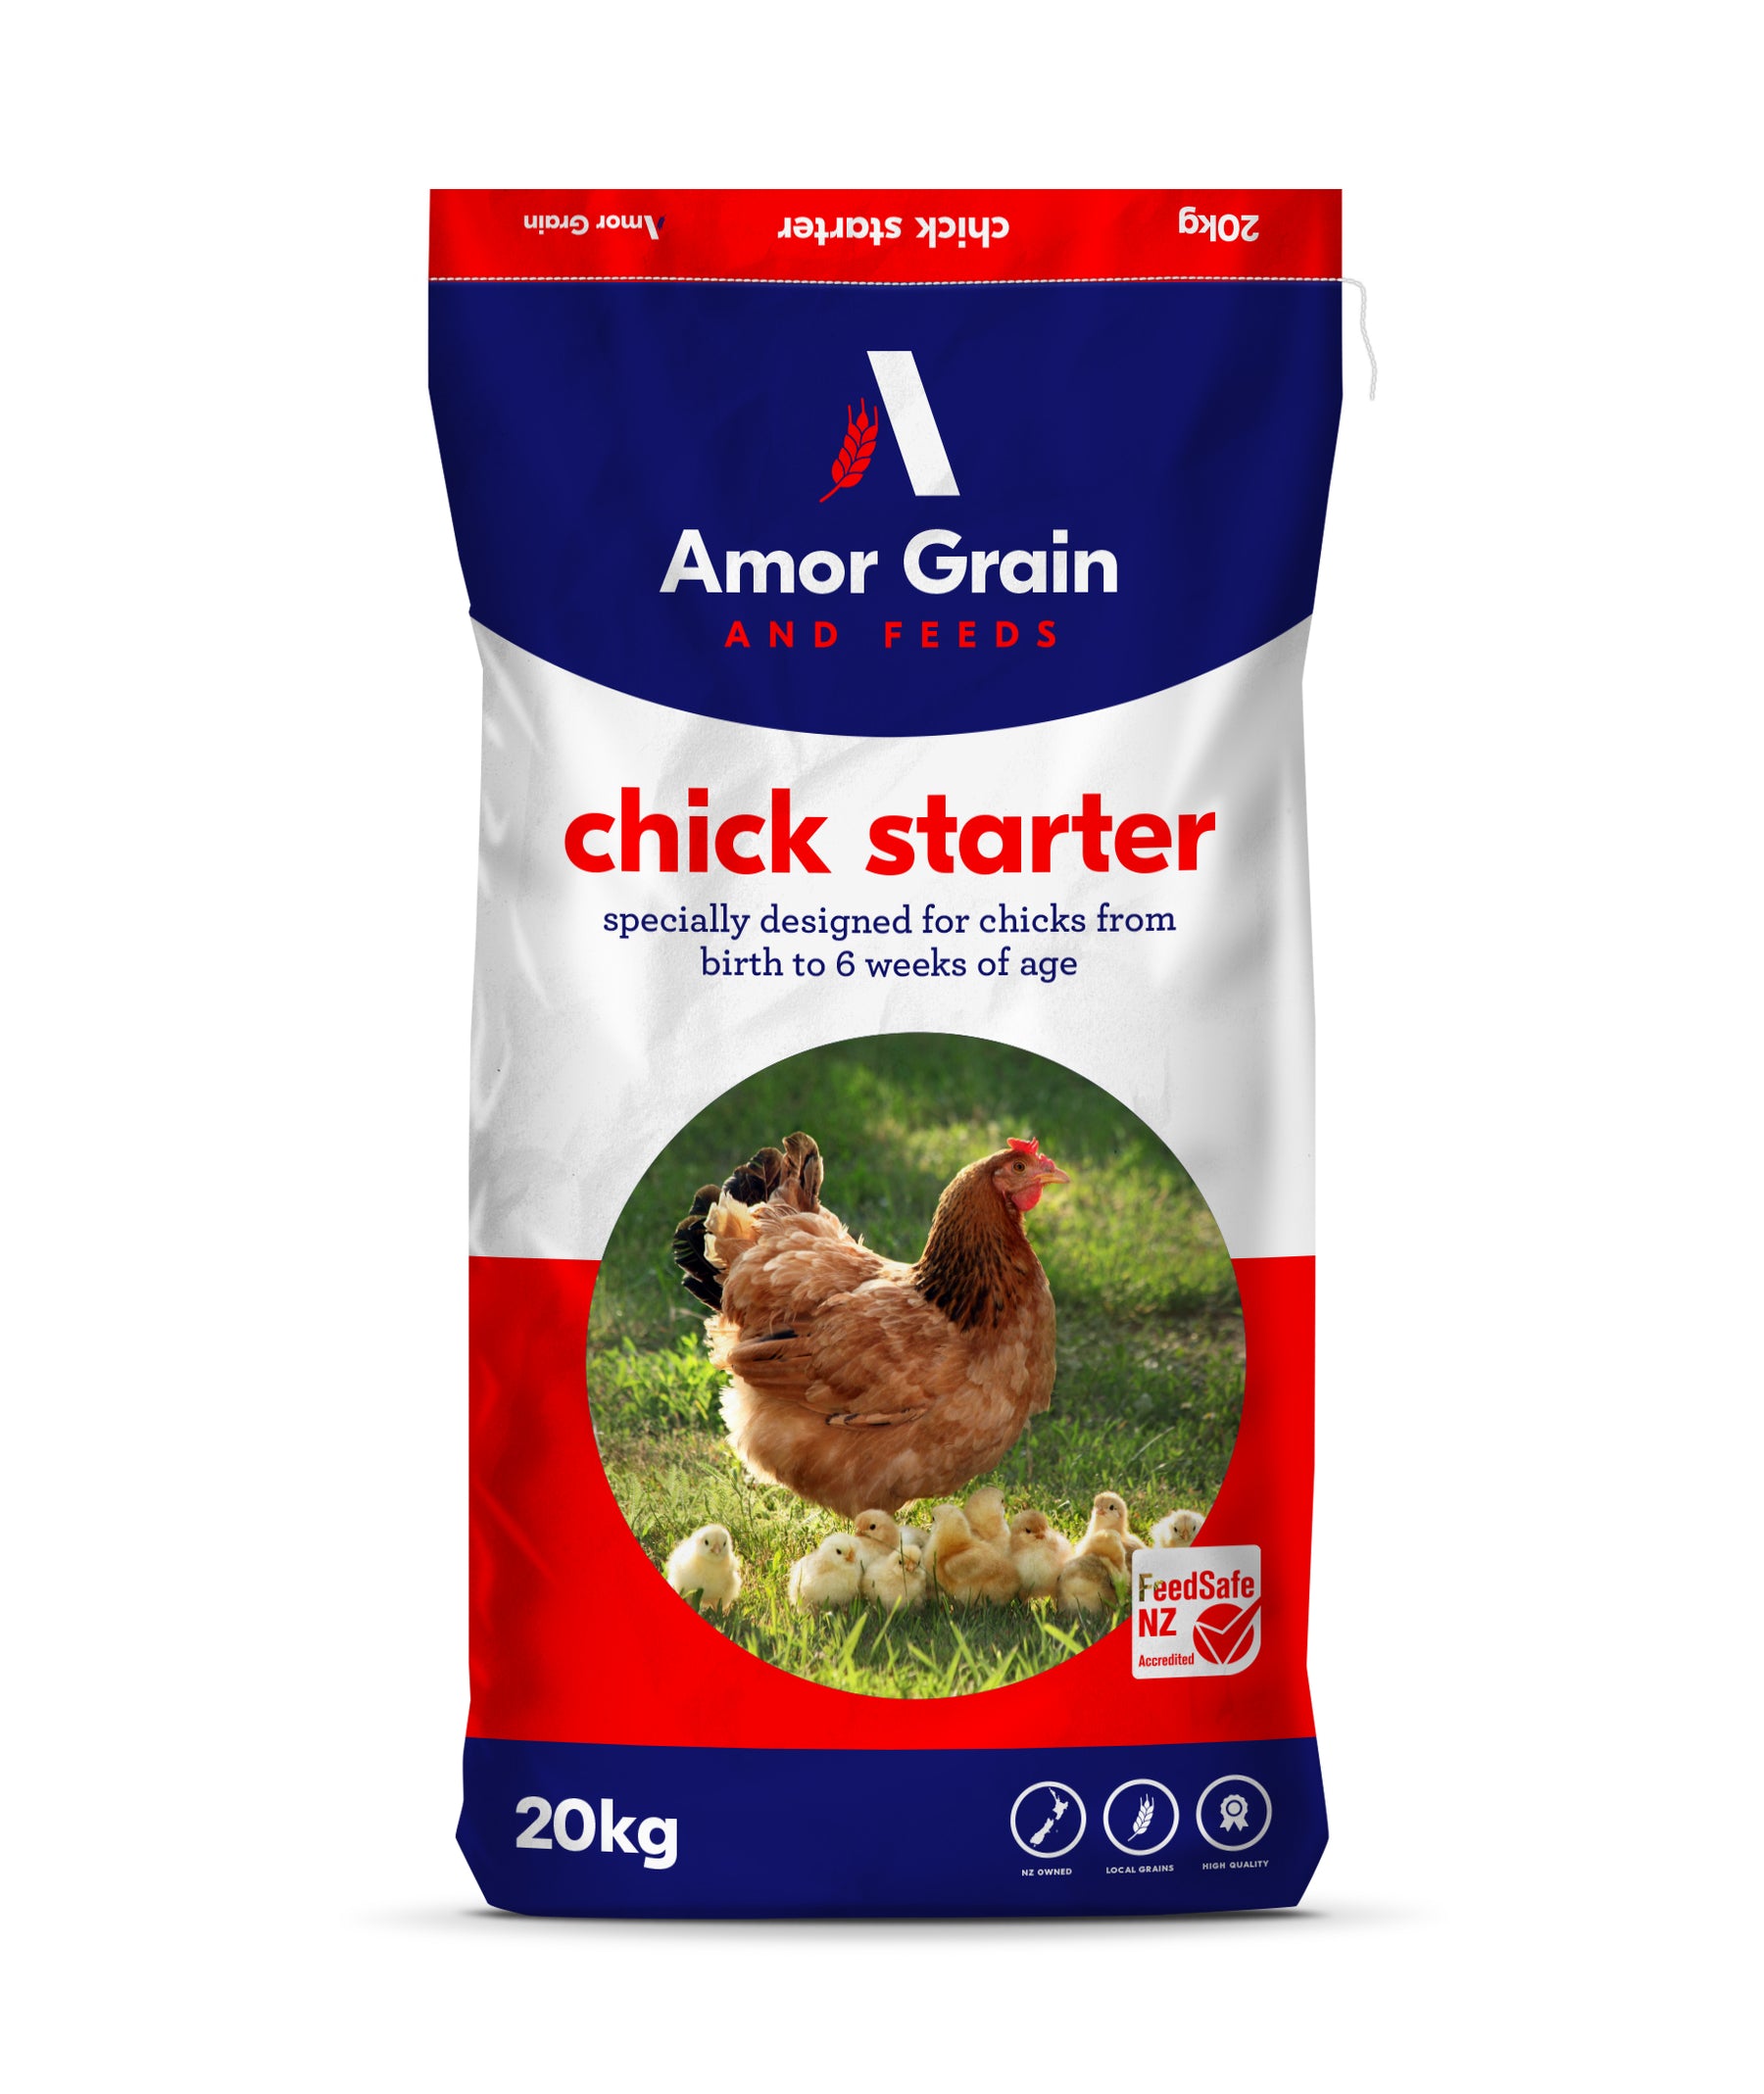 Amor Grain Chick Starter